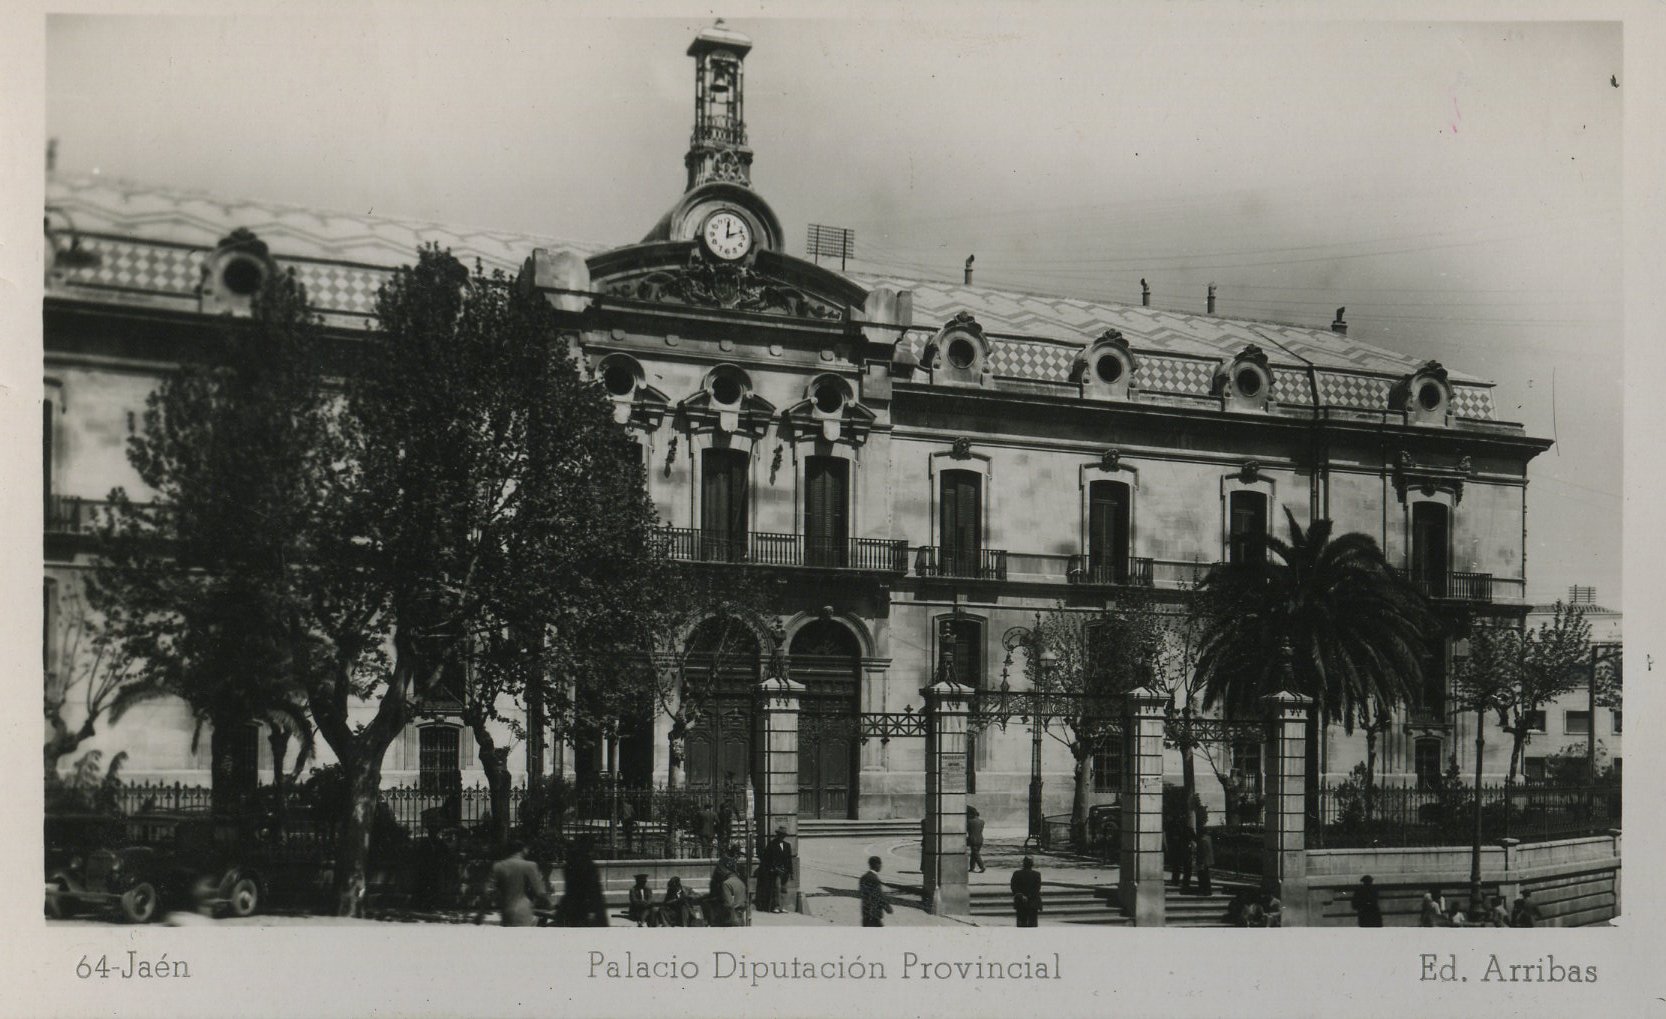 Palacio de la Diputación Provincial. Editorial Arribas. Década de 1950.